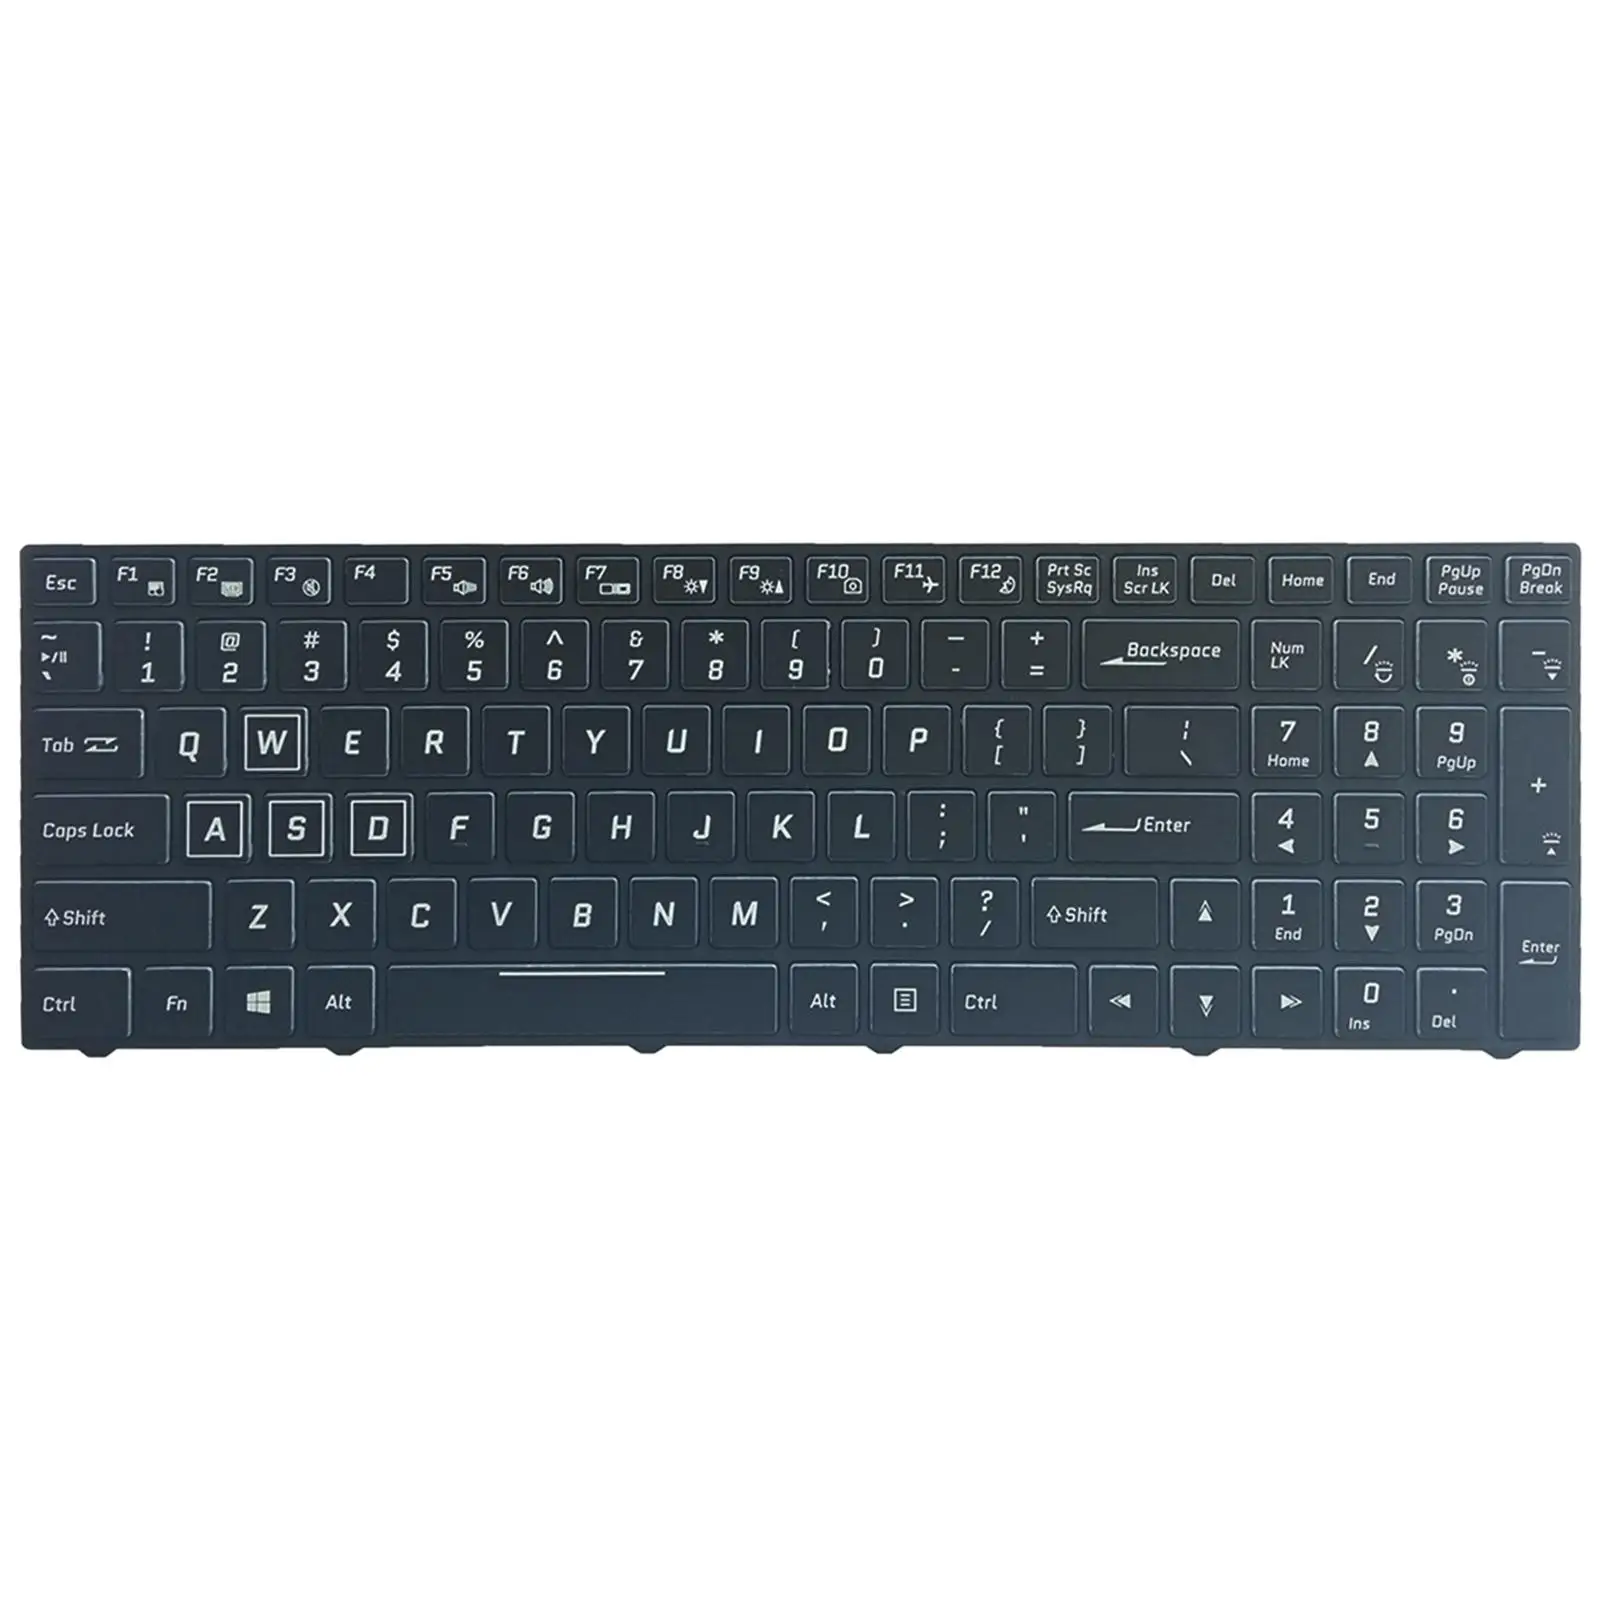 Laptop Keyboard, US Layout English RGB Backlit for Clevo N850 N950 N857HK Cvm15F23Usj430B 6-80-N85H0-011-1